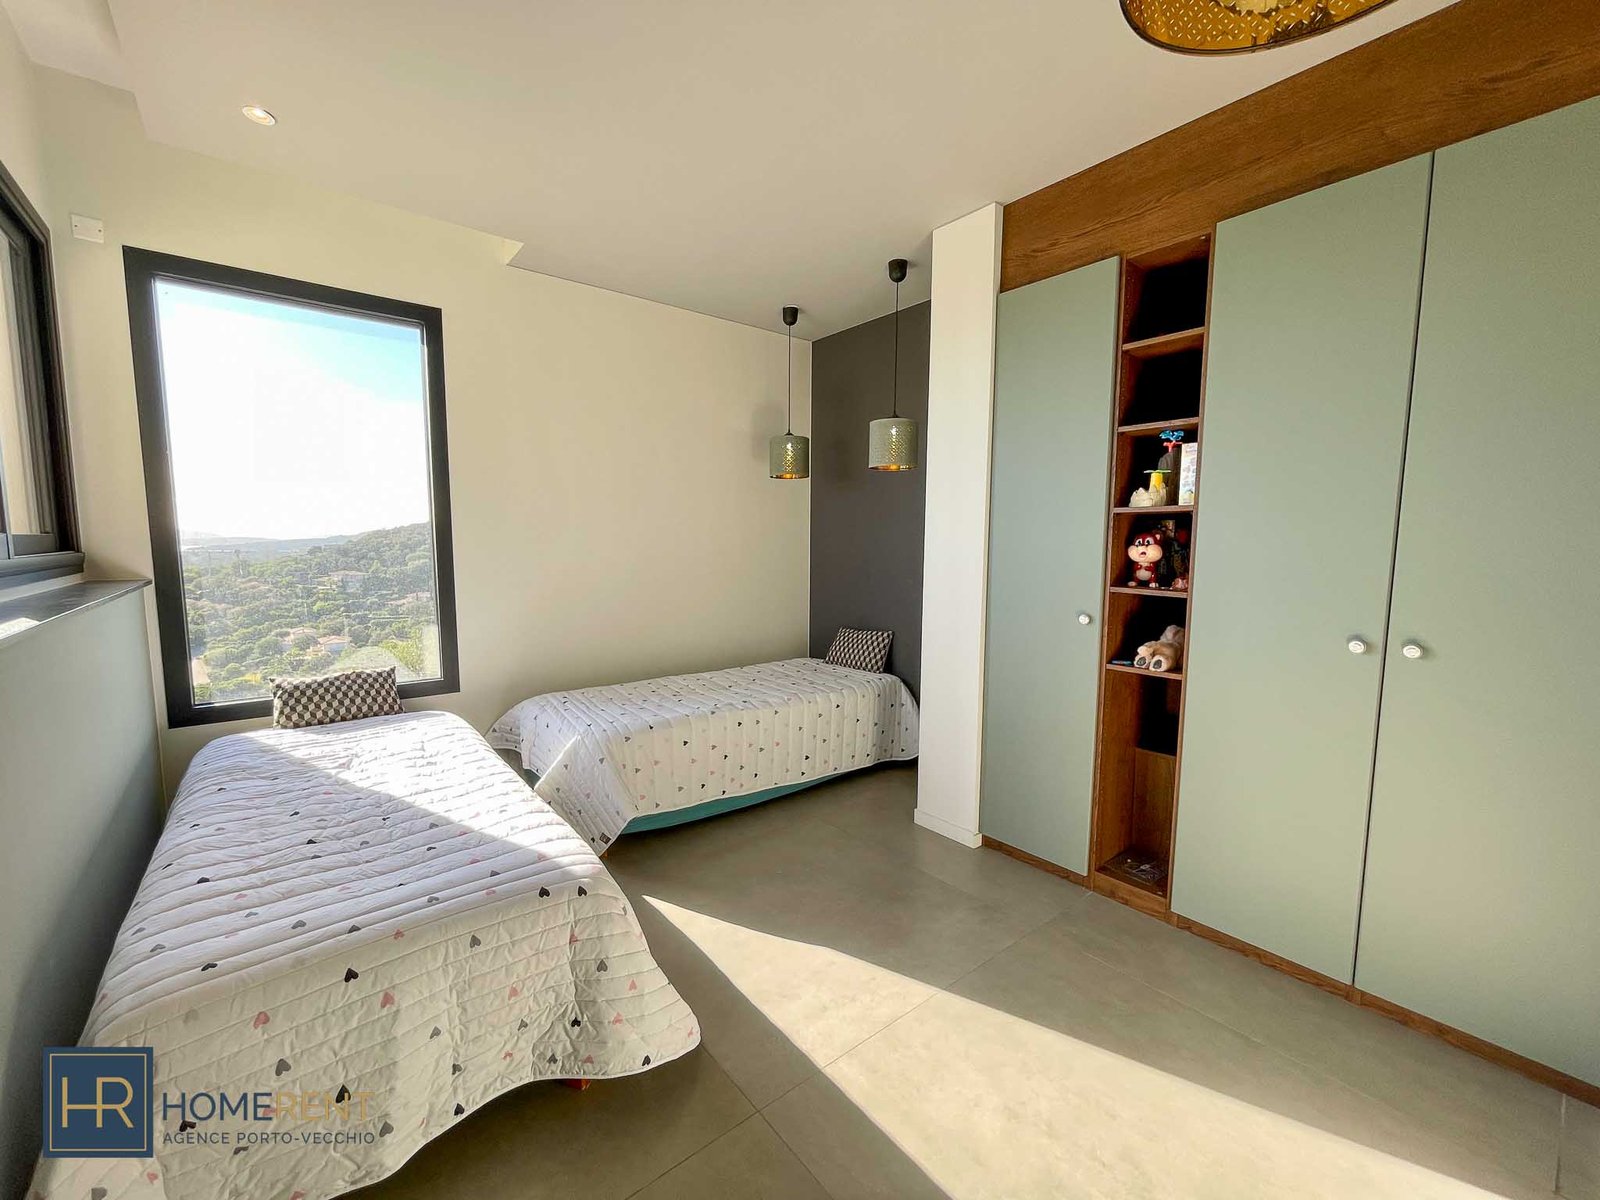 Chambre 6 dortoir enfants villa Alta en location en Corse du Sud plage St Cyprien Corse